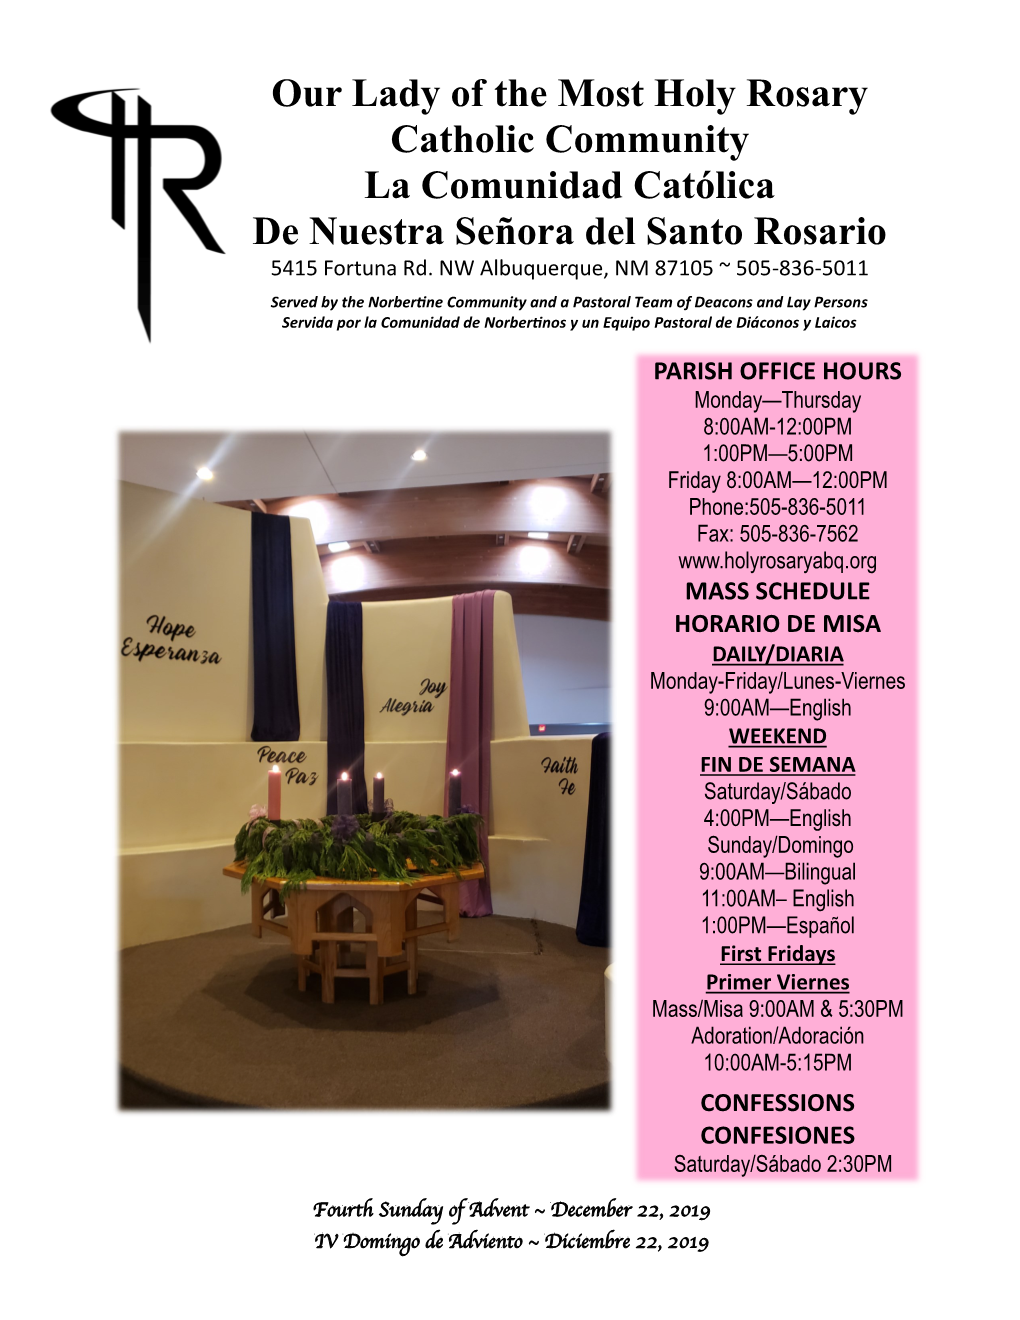 Our Lady of the Most Holy Rosary Catholic Community La Comunidad Católica De Nuestra Señora Del Santo Rosario 5415 Fortuna Rd